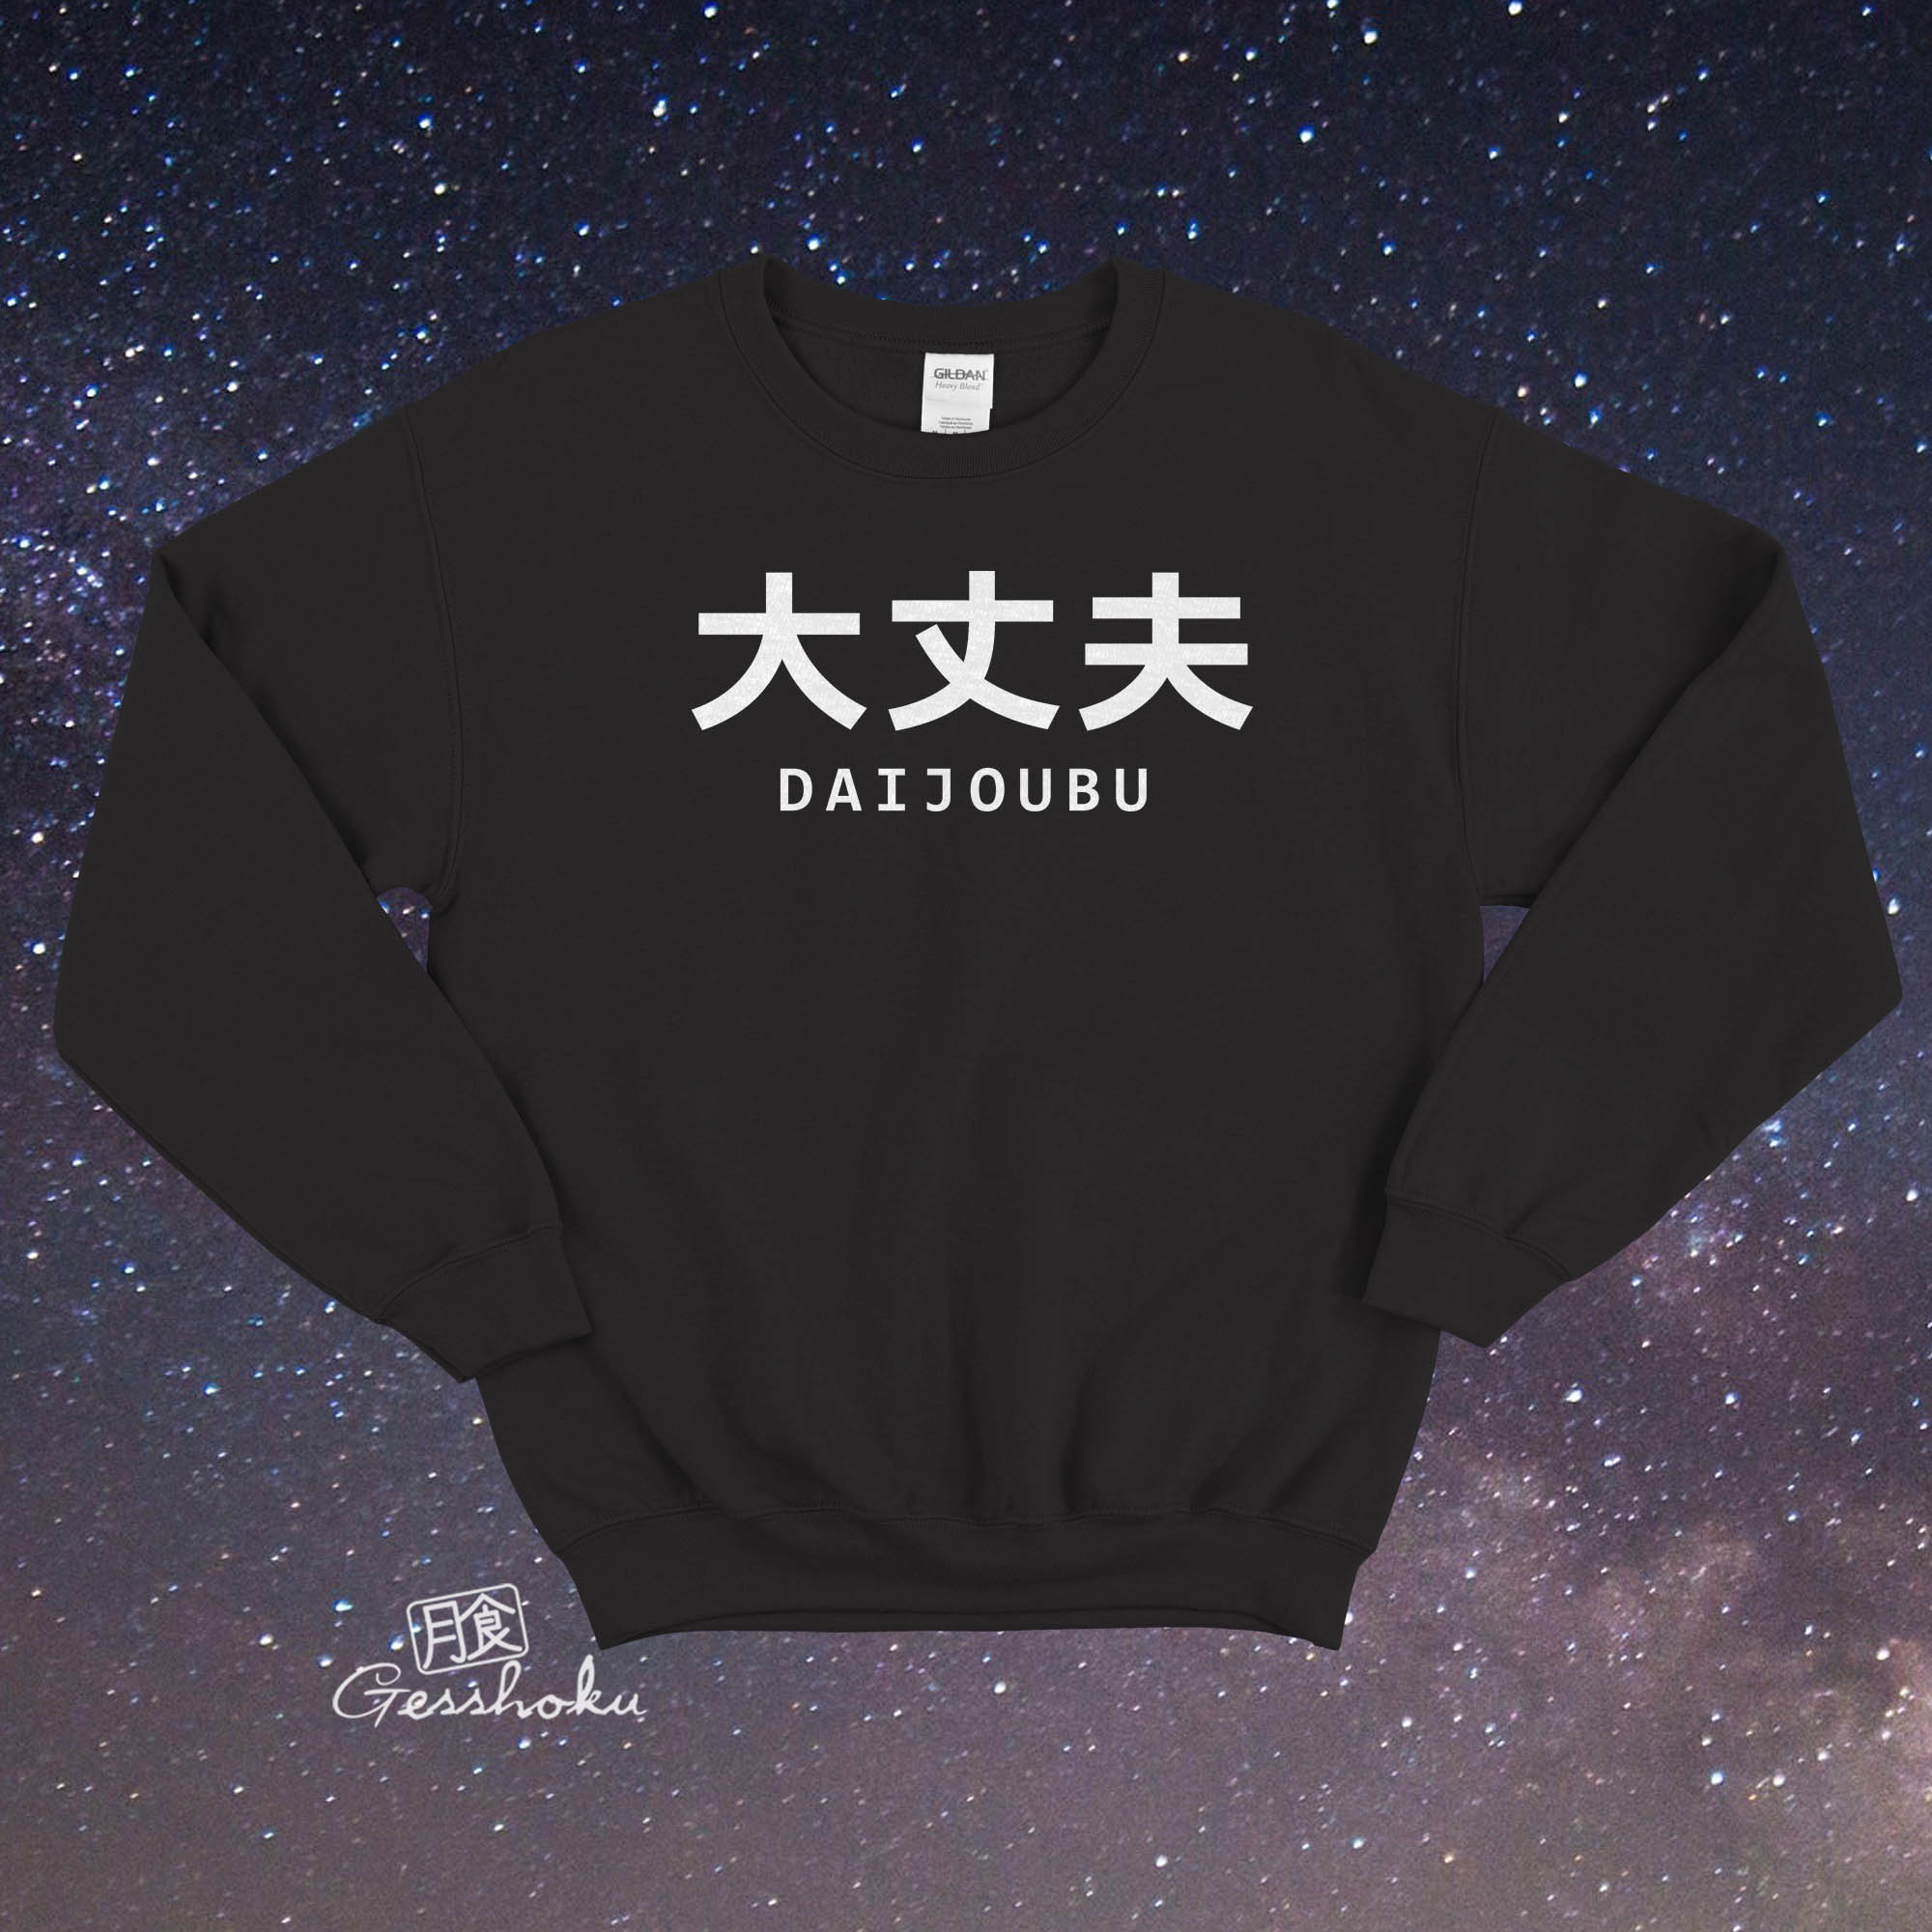 Daijoubu "It's Okay" Crewneck Sweatshirt - Black